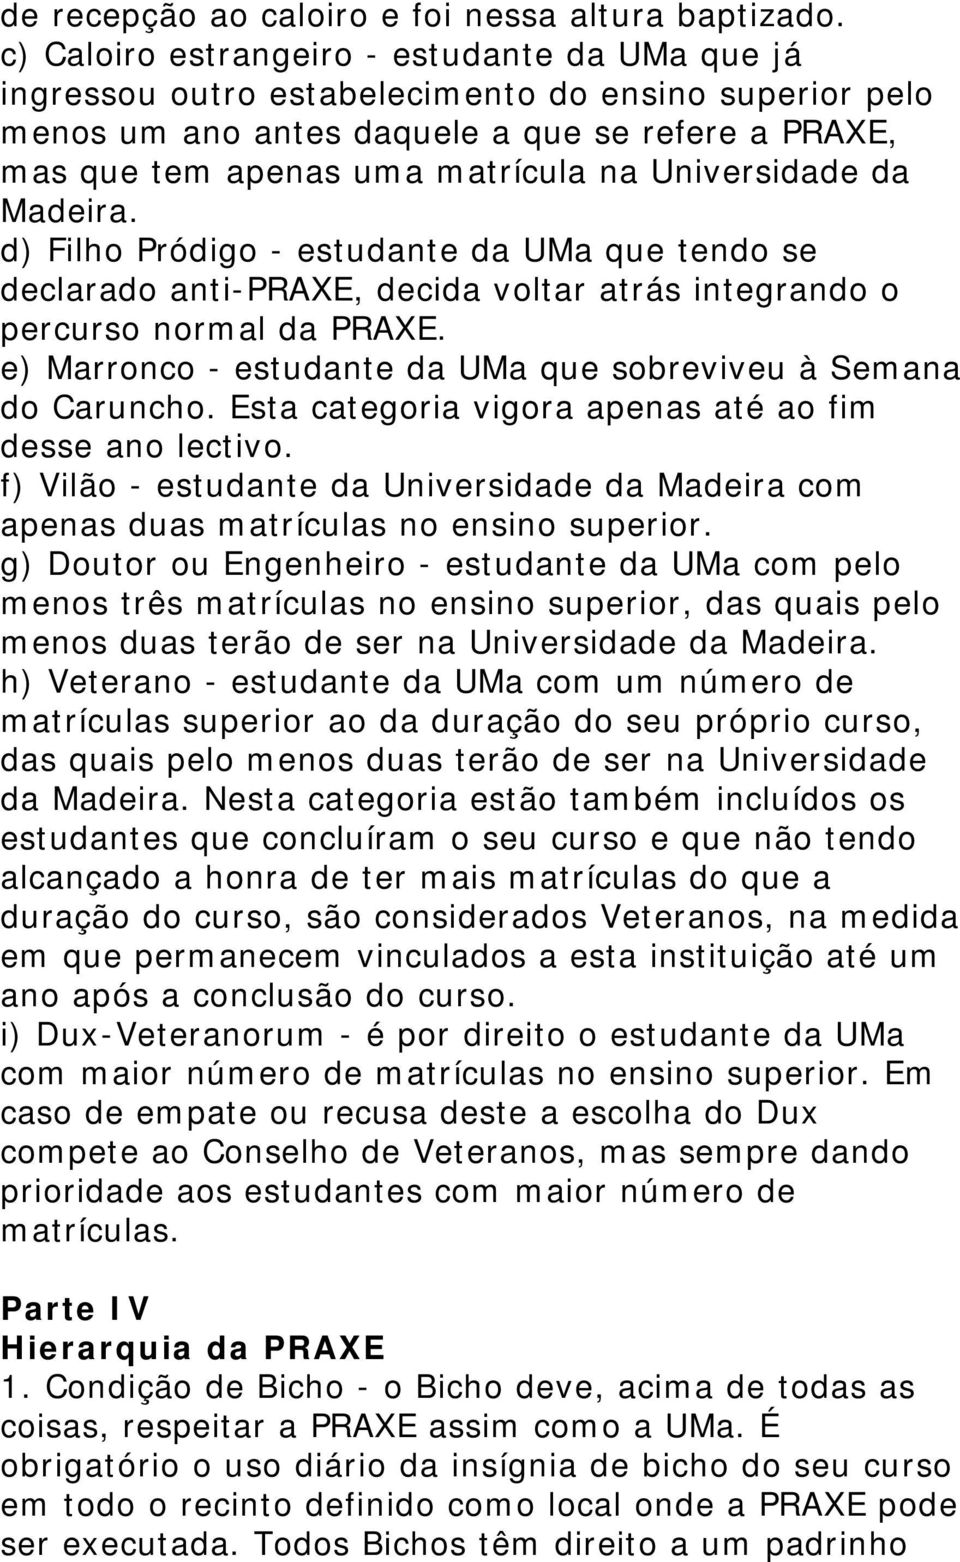 Universidade da Madeira. d) Filho Pródigo - estudante da UMa que tendo se declarado anti-praxe, decida voltar atrás integrando o percurso normal da PRAXE.